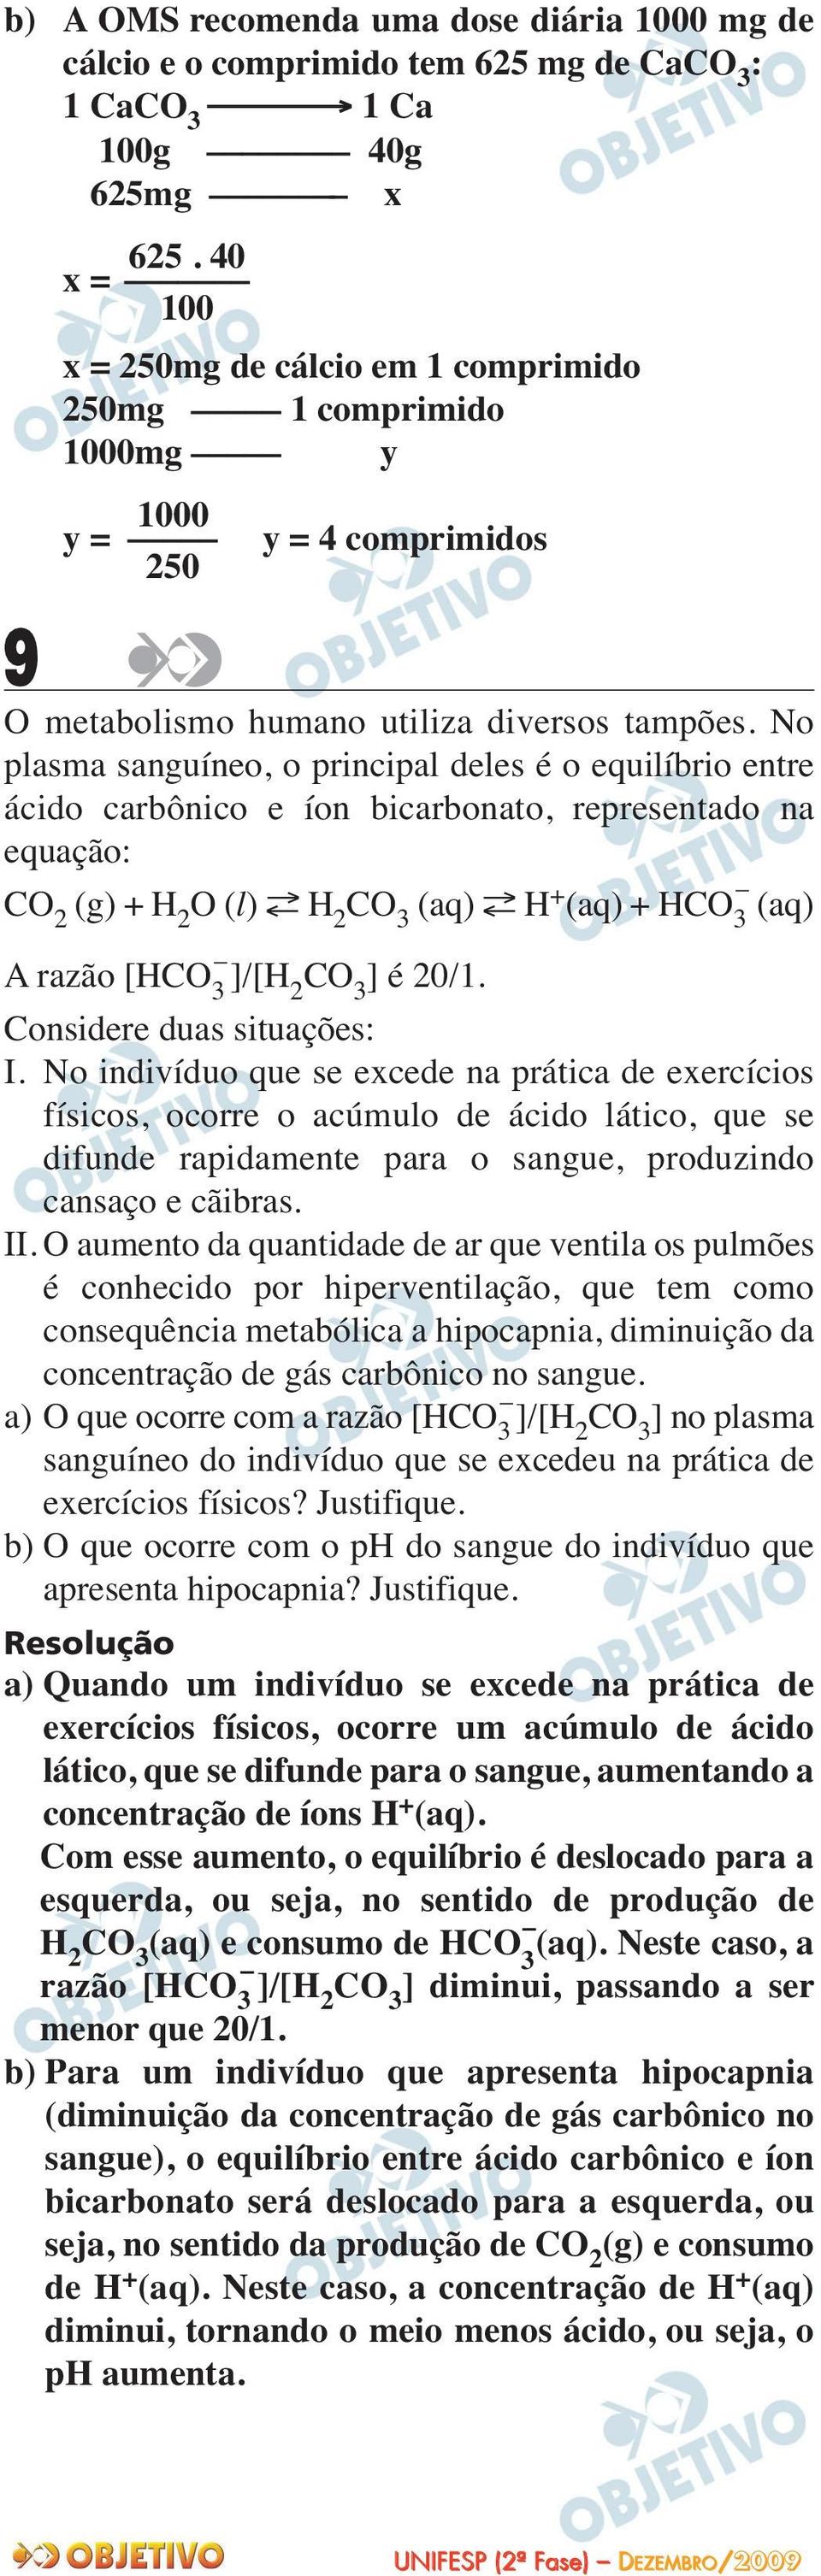 No plasma sanguíneo, o principal deles é o equilíbrio entre ácido carbônico e íon bicarbonato, representado na equação: CO (g) + H O (l) H CO 3 (aq) H + (aq) + HCO 3 (aq) A razão [HCO 3 ]/[H CO 3 ] é